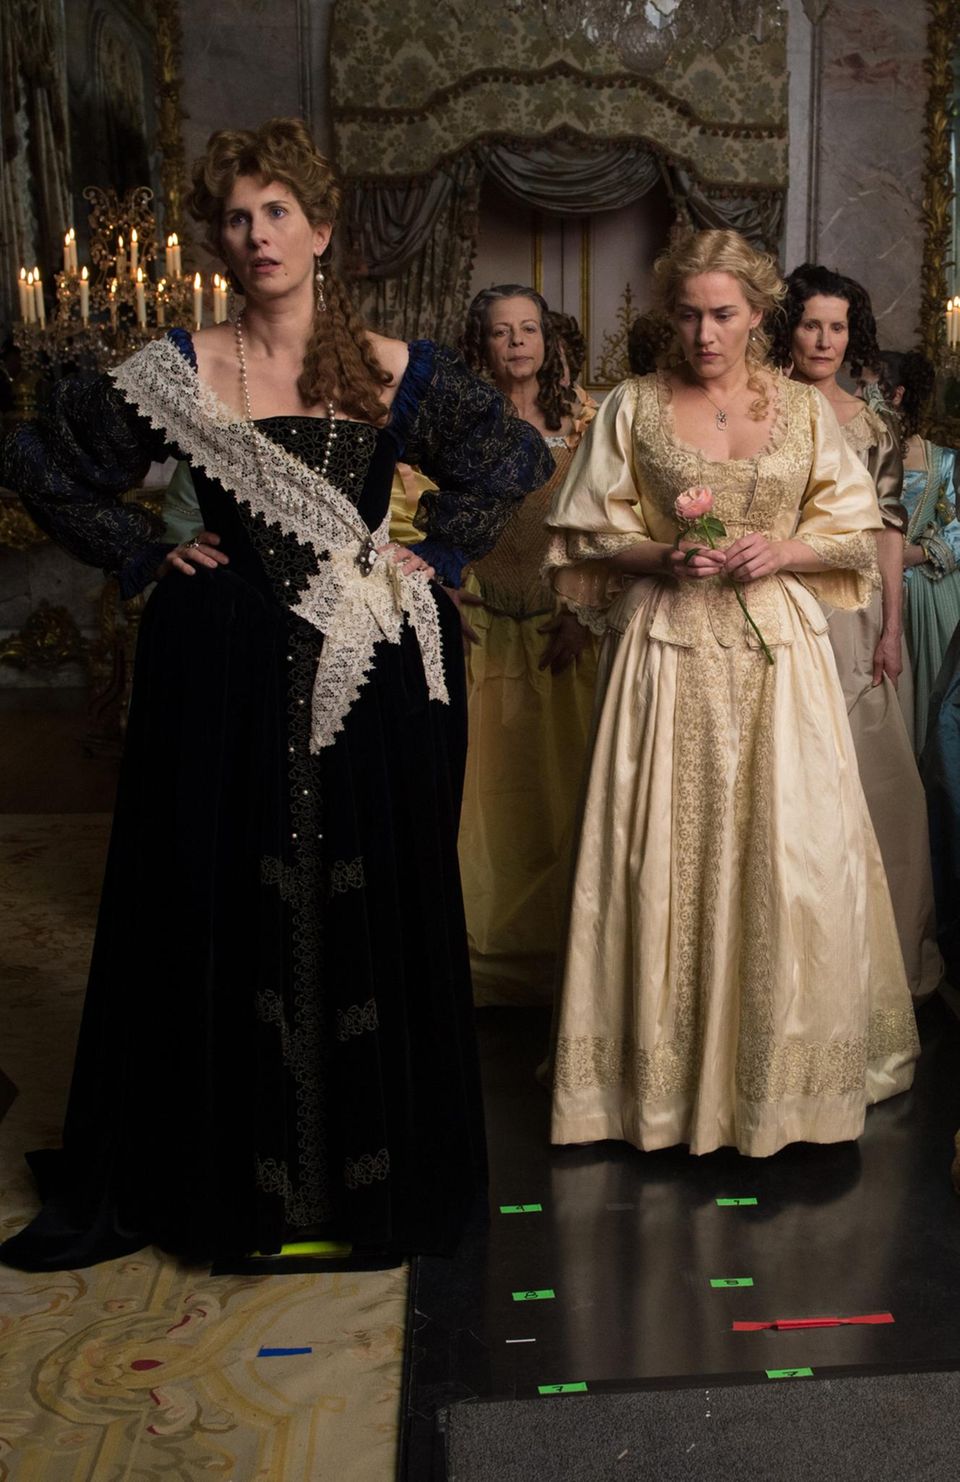 Paula Paul, als deutsche Prinzessin Palatine, neben Kate Winslet in der Historien-Lovestory "Die Gärtnerin von Versailles", die im Frankreich des 17. Jahrhunderts spielt.